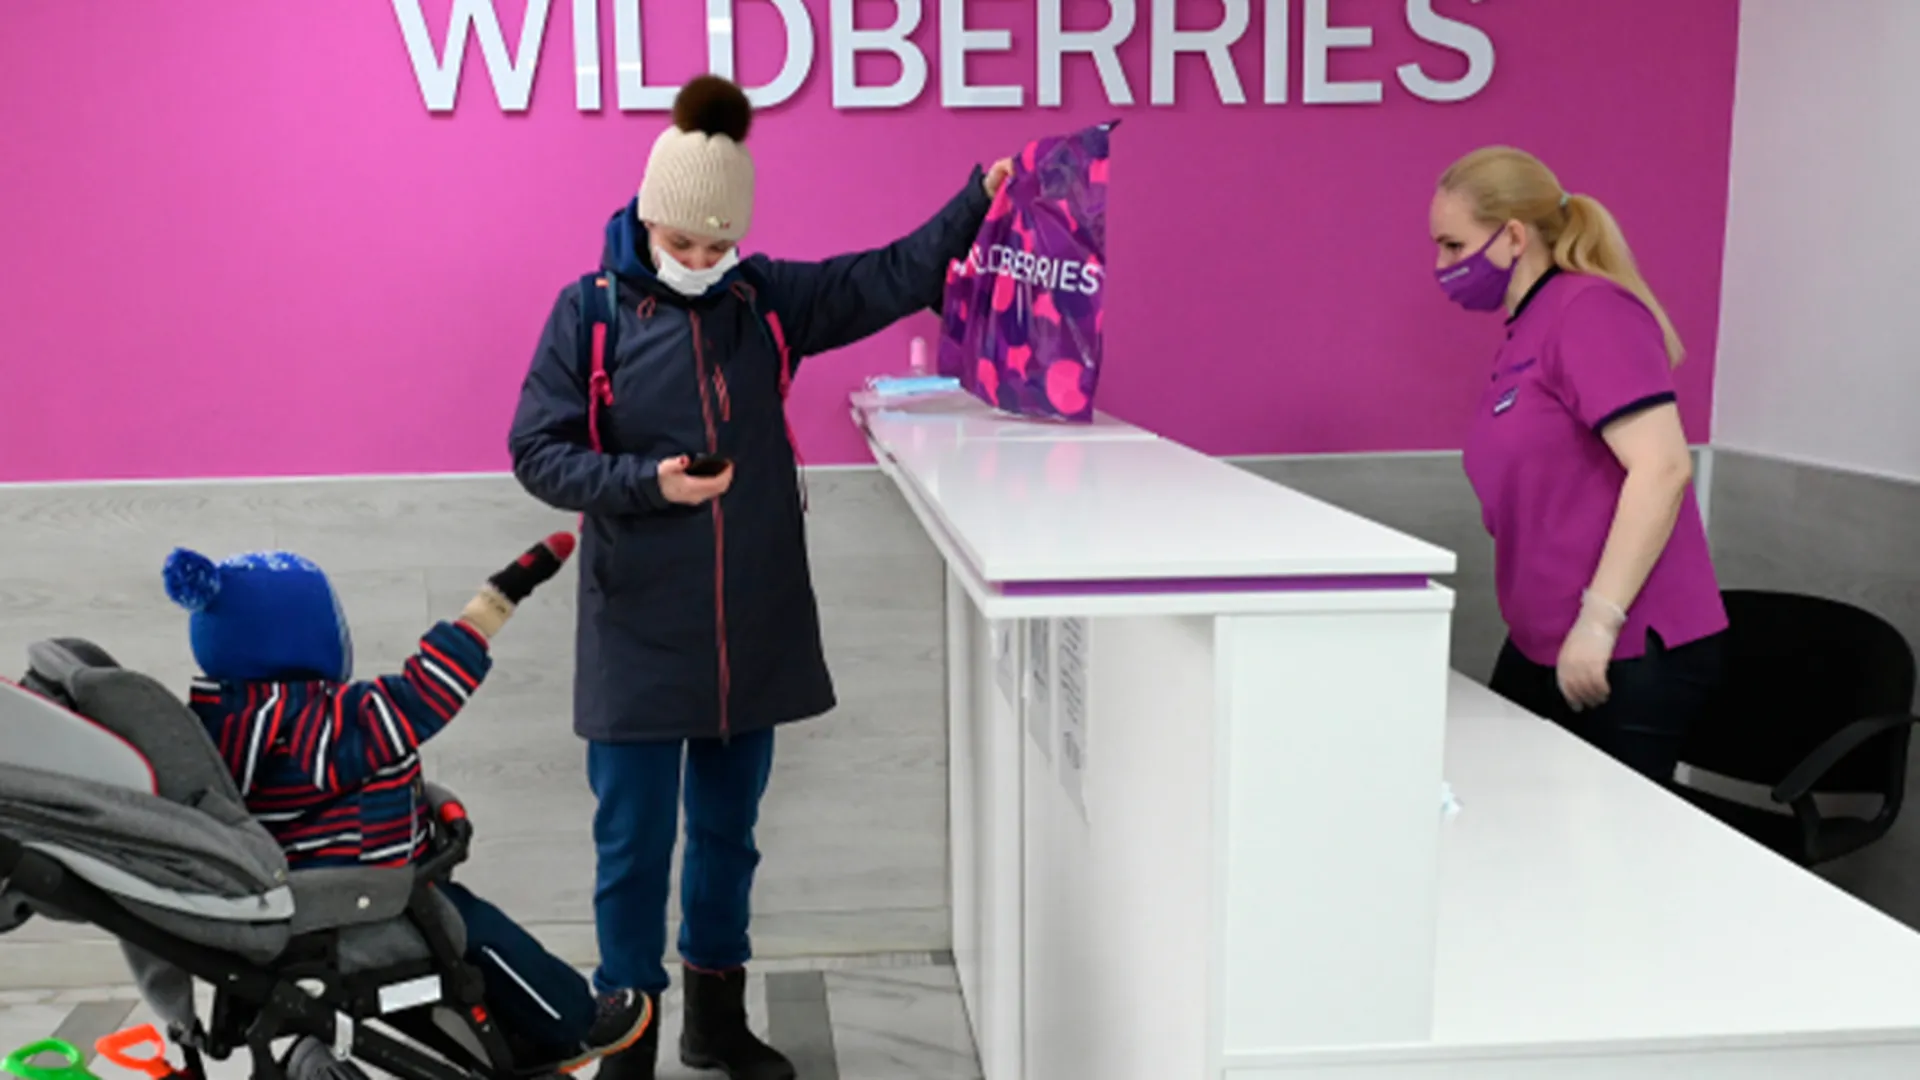 Россияне обеспокоены возможным закрытием Wildberries